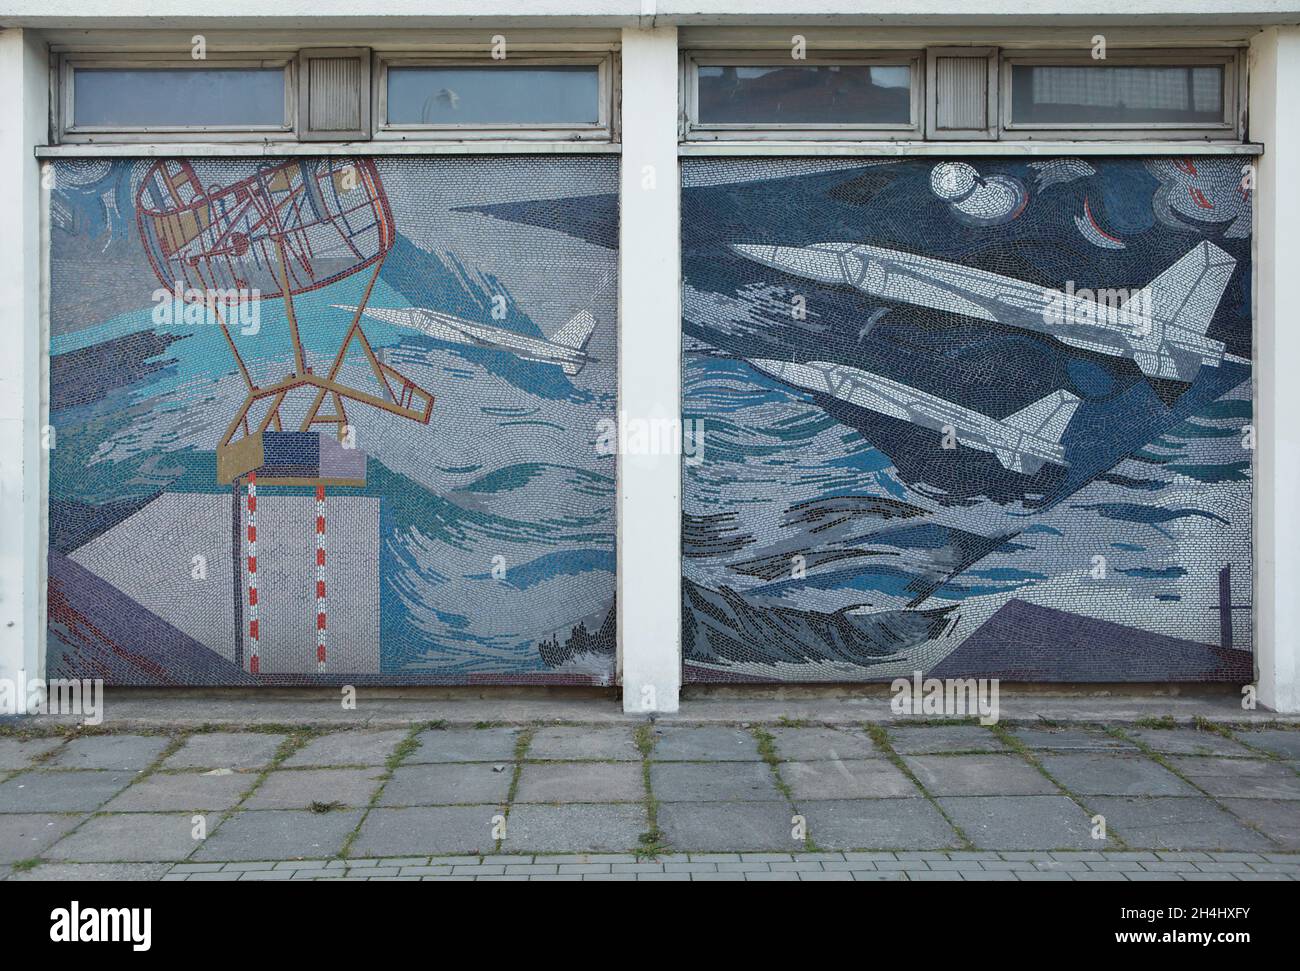 Sowjetische Kampfflugzeuge, dargestellt im Wandmosaik am Rechenzentrum Potsdam (RZ) in Potsdam. Das Gebäude des ehemaligen sozialistischen Rechenzentrums ist mit den Mosaiken des deutschen Künstlers Fritz Eisel (1971-1972) mit dem Titel 'der Mensch erobert den Kosmos' bedeckt. In diesem Teil des Mosaiks sind sowjetische Kampfflugzeuge MiG-23 oder MiG-25 abgebildet. Stockfoto